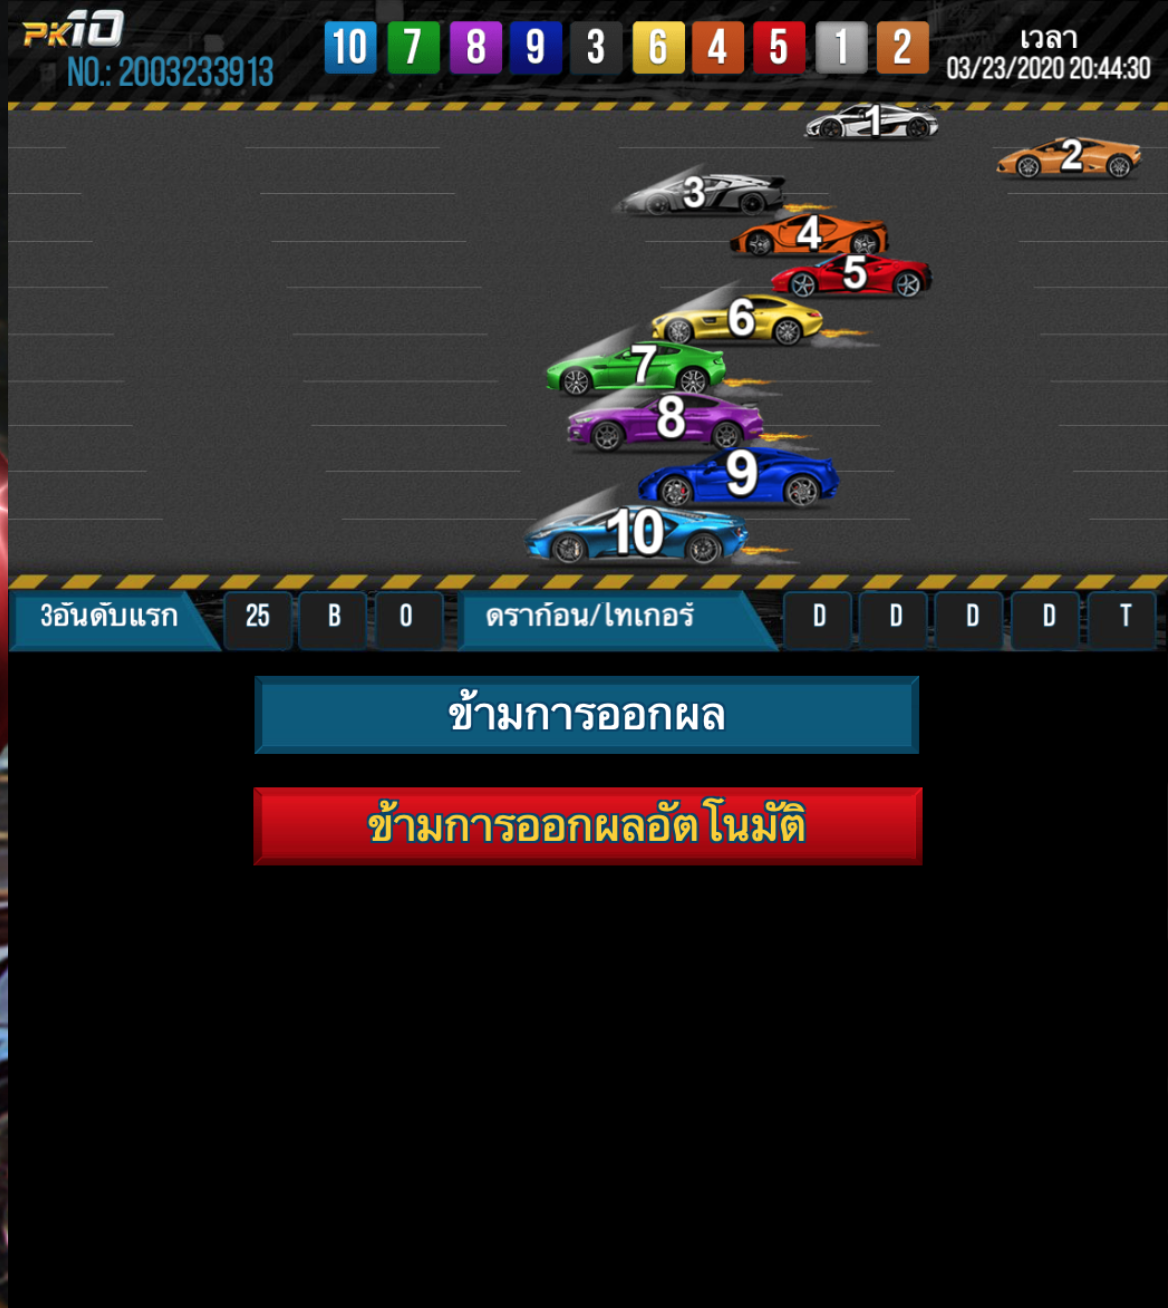 การแข่งขันรถภายในเกม PK10 ของ เว็บพนันออนไลน์ BK8